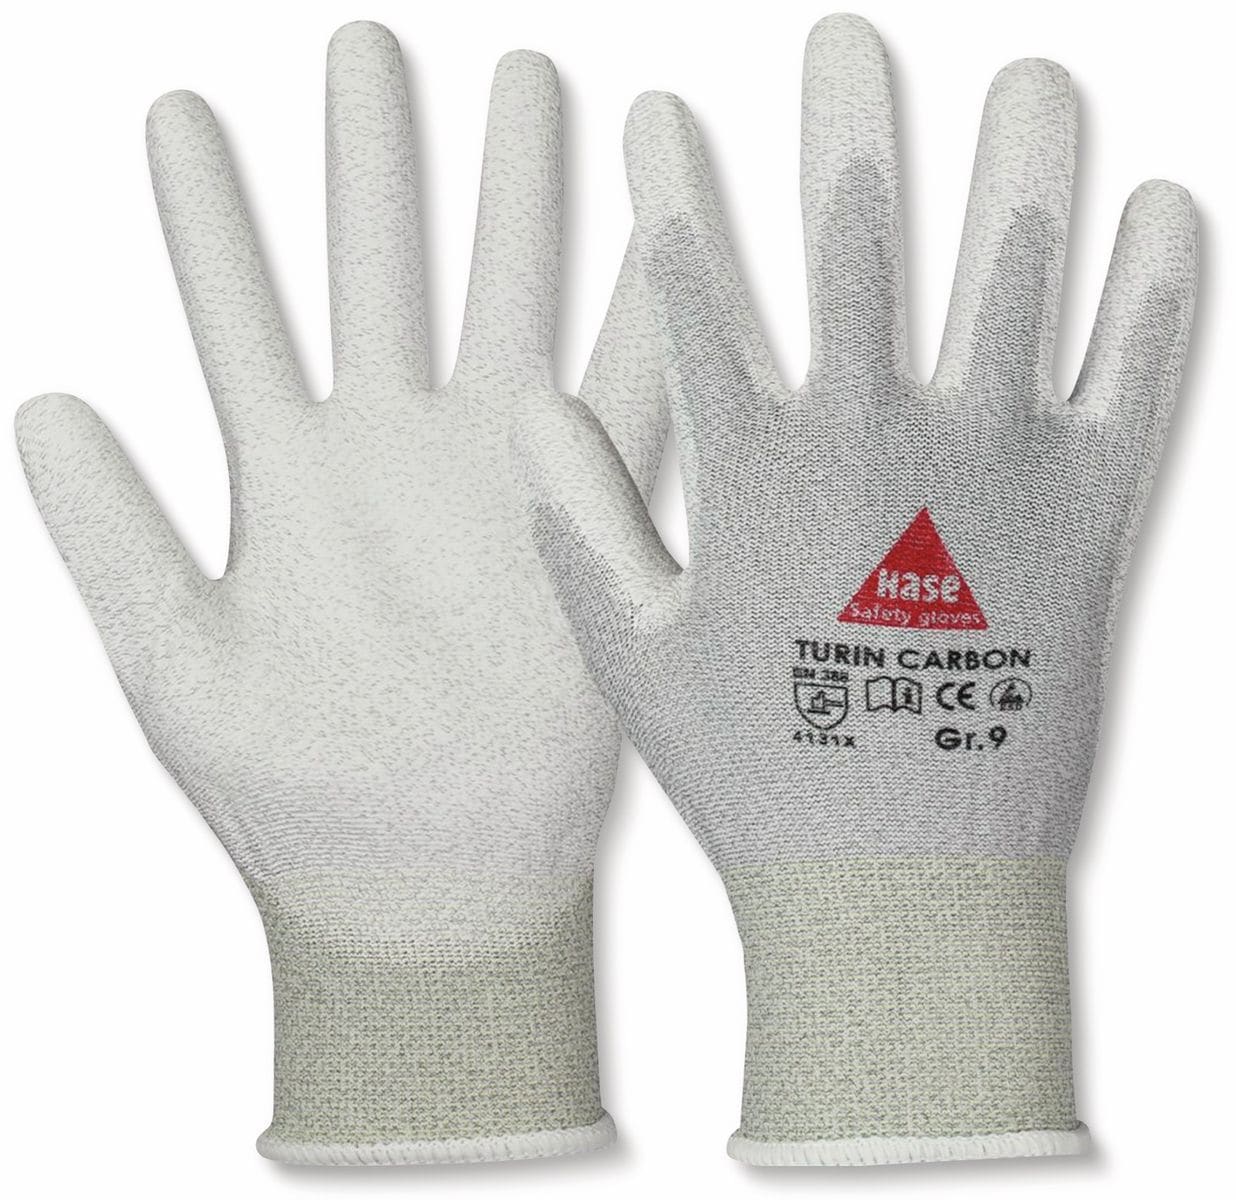 HASE SAFETY GLOVES Montagehandschuhe, TURIN CARBON, EN388, EN 420, antistatisch, grau/weiß, Größe 7 von Hase Safety gloves